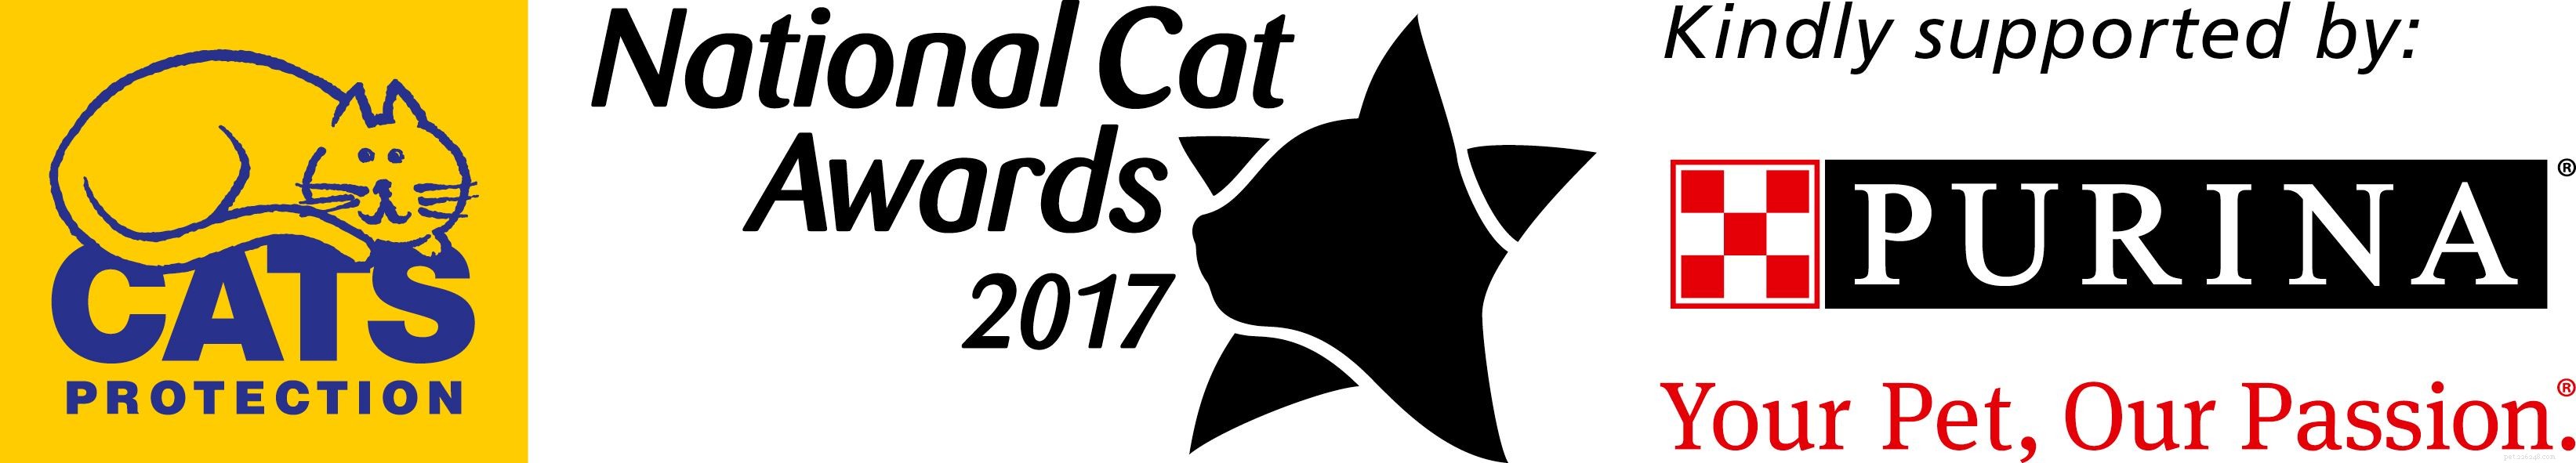 Seznamte se s finalisty kategorie Furr-ever Friends v roce 2017 National Cat Awards!